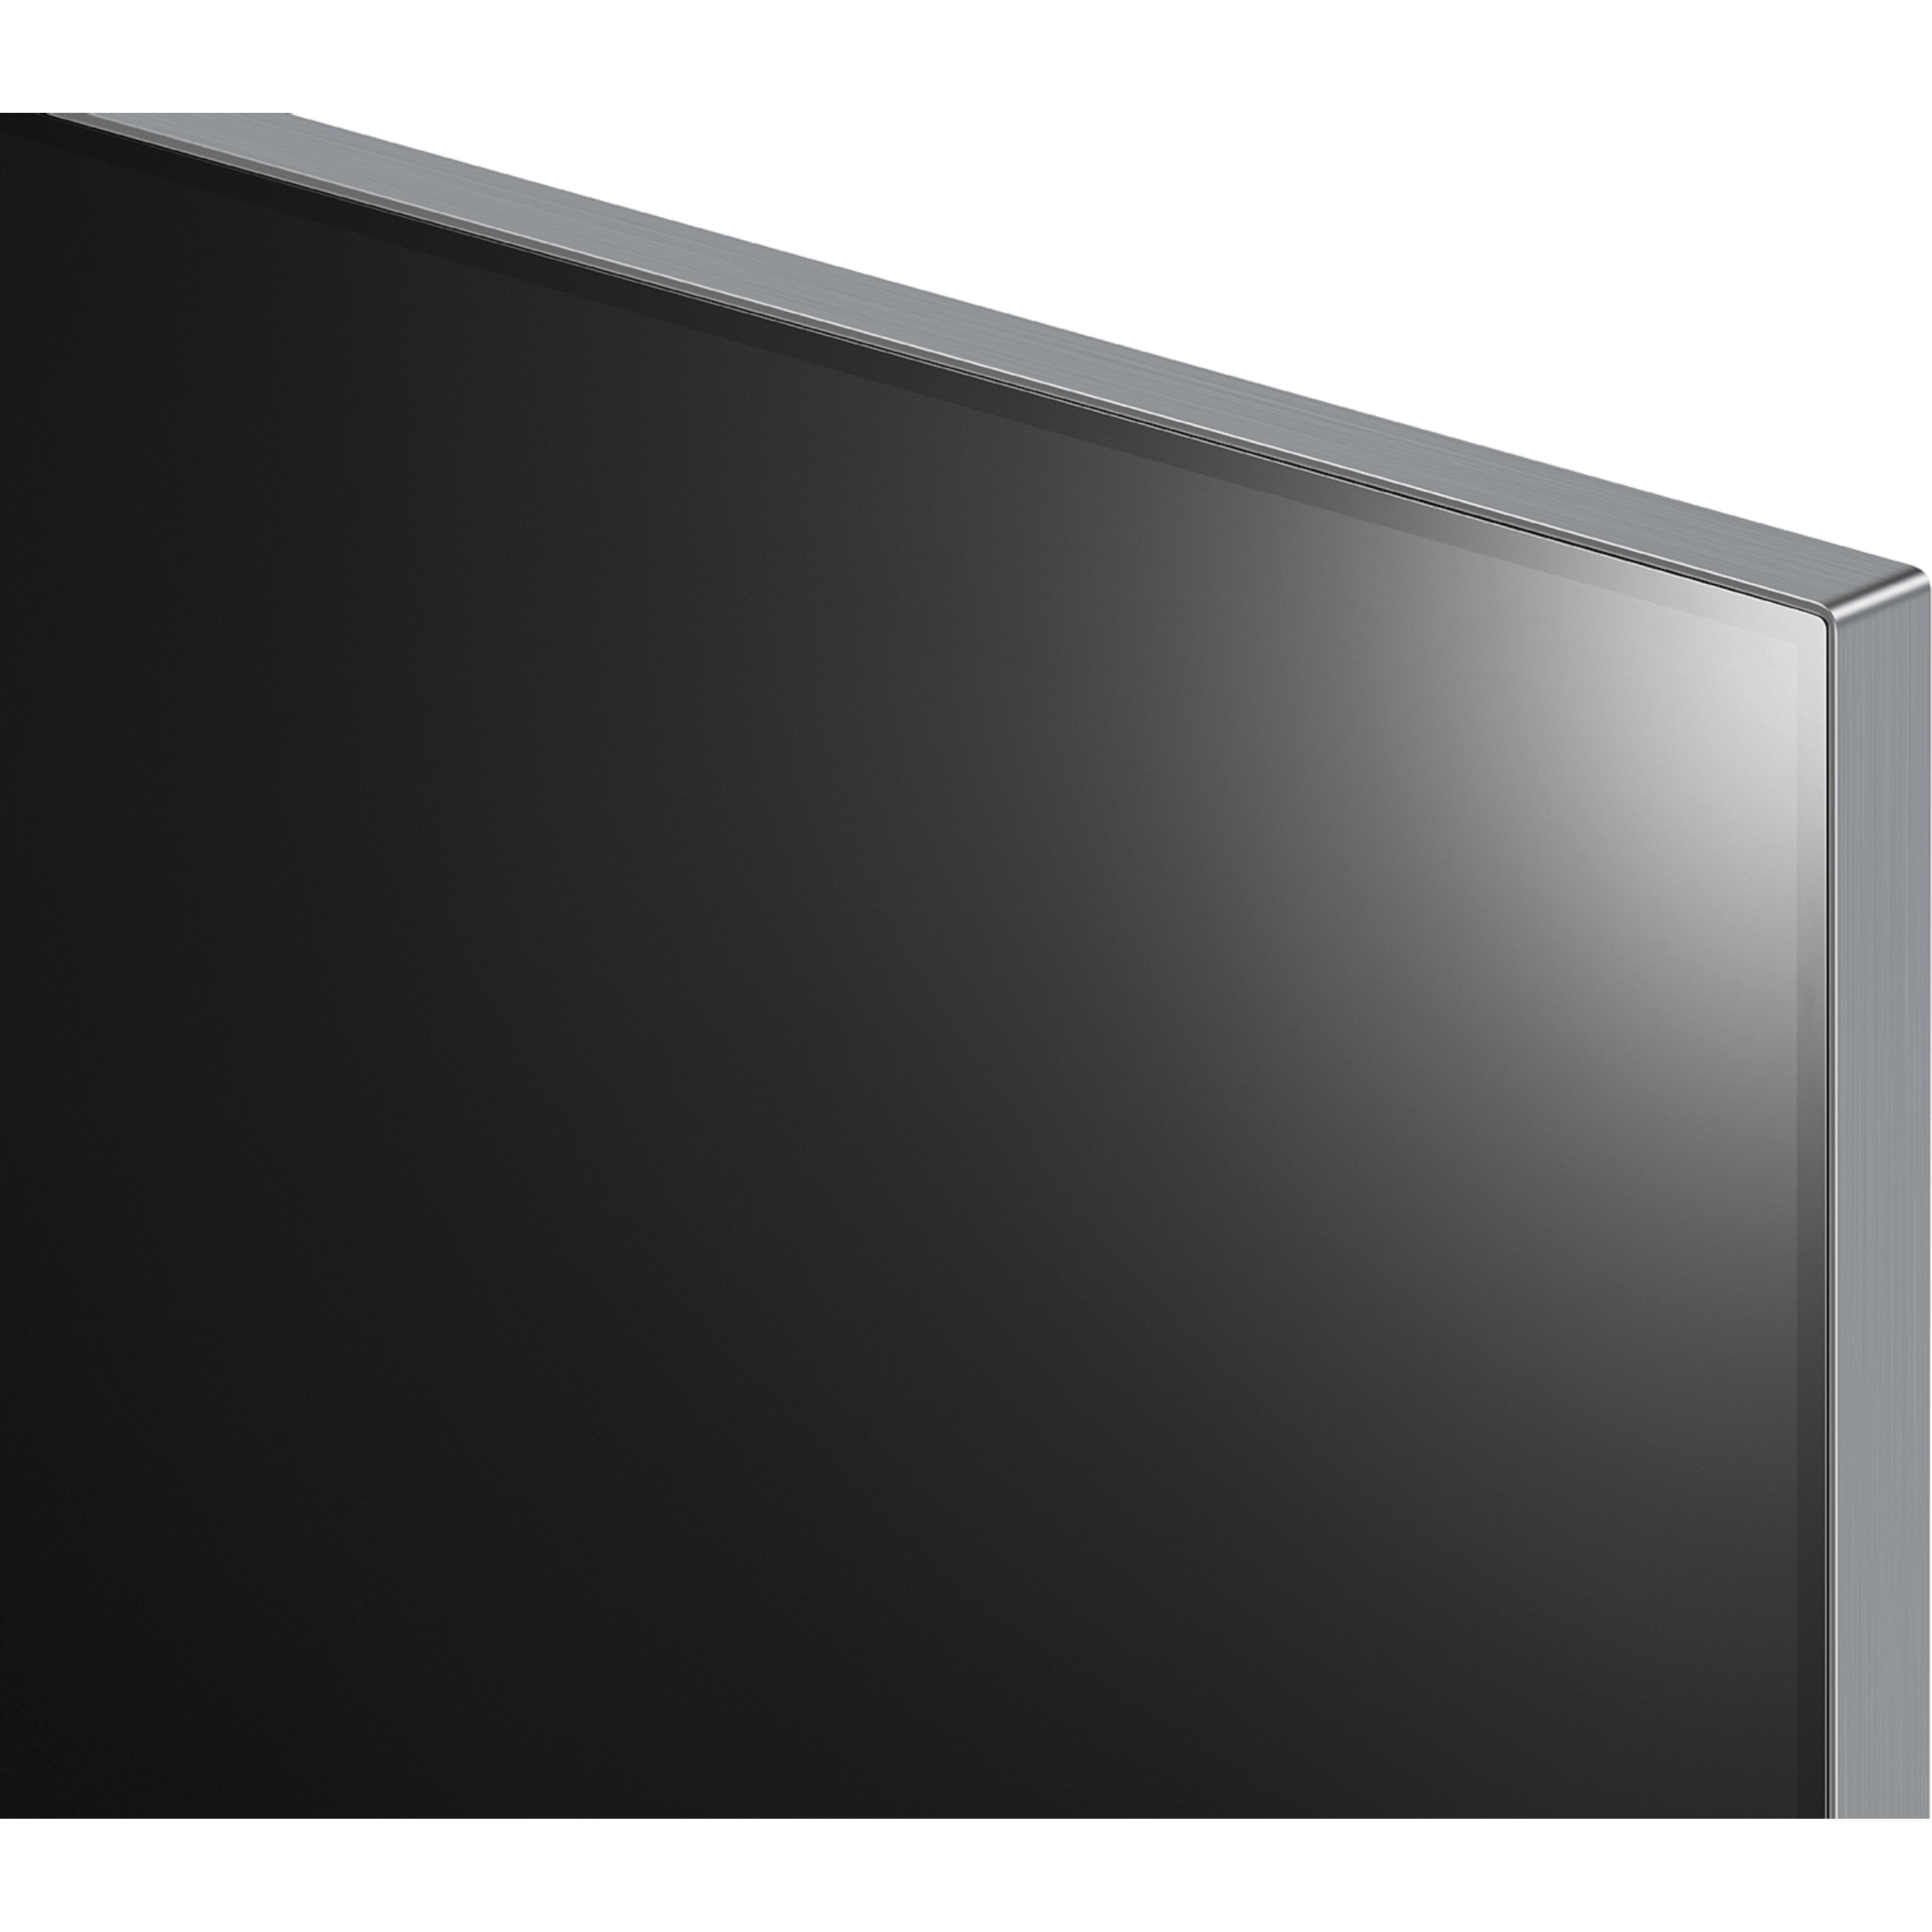 טלוויזיה חכמה 65 אינץ' מבוססת בינה מלאכותית LG Smart TV OLED evo 4K OLED65G36LA - אחריות ע